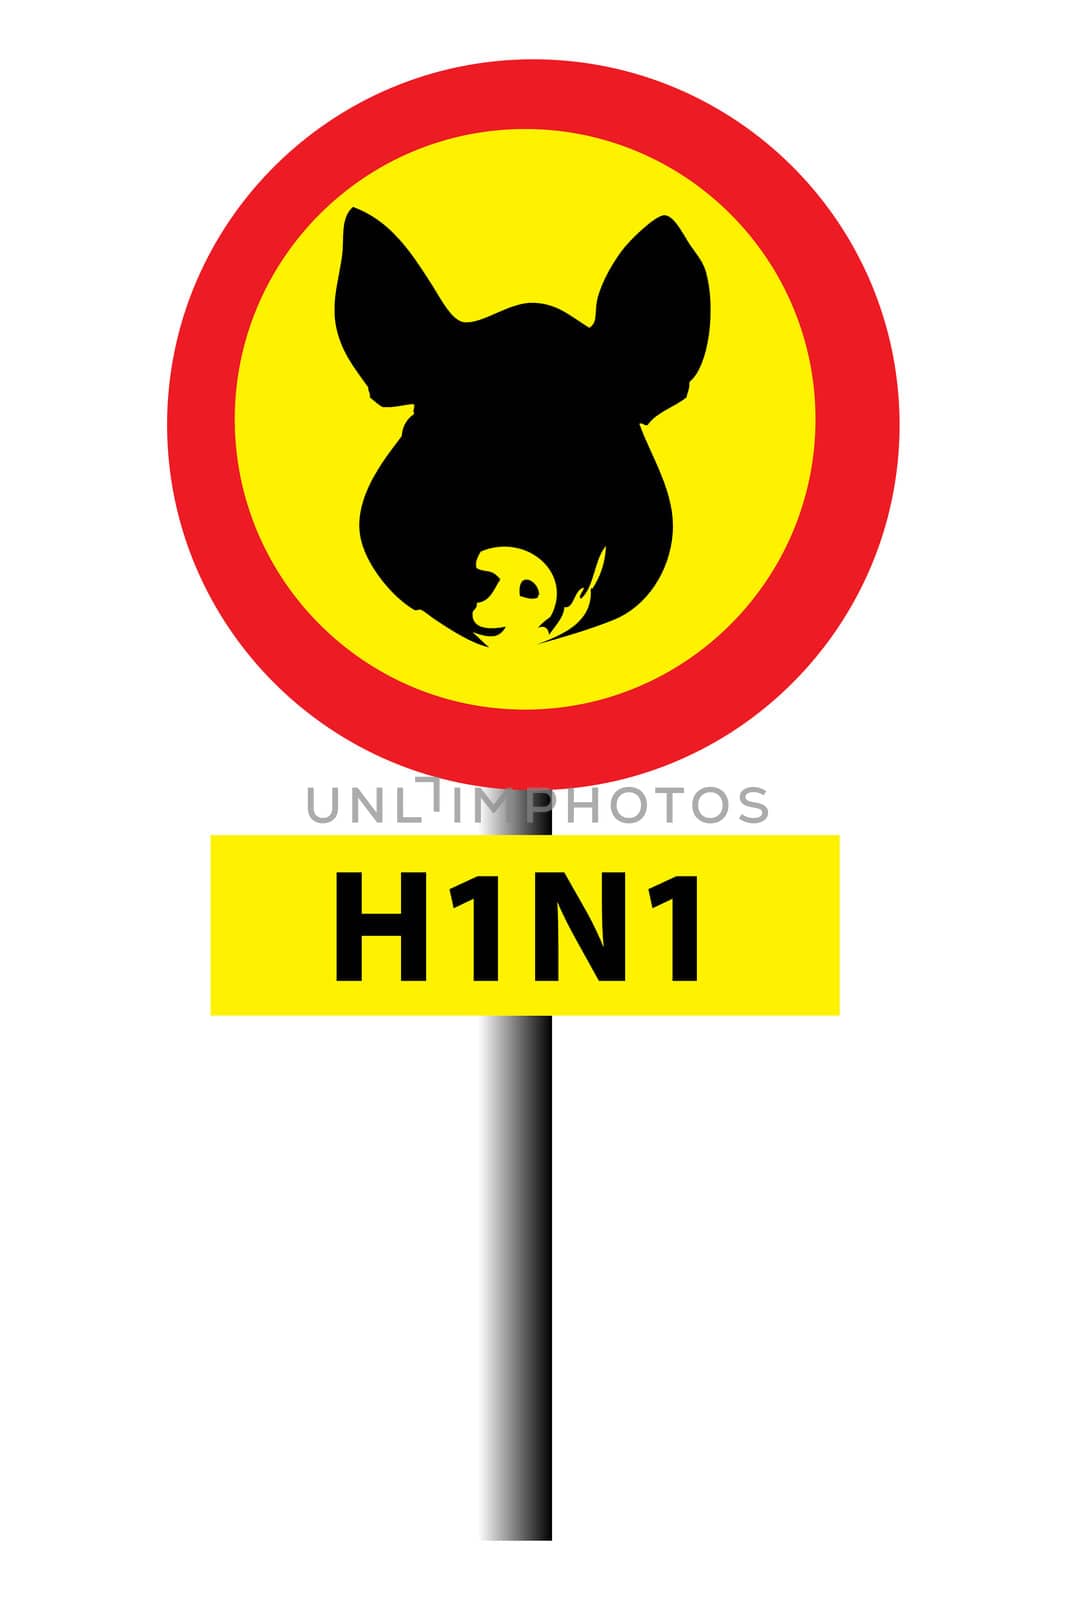 H1N1 aka Swine flu warning sign